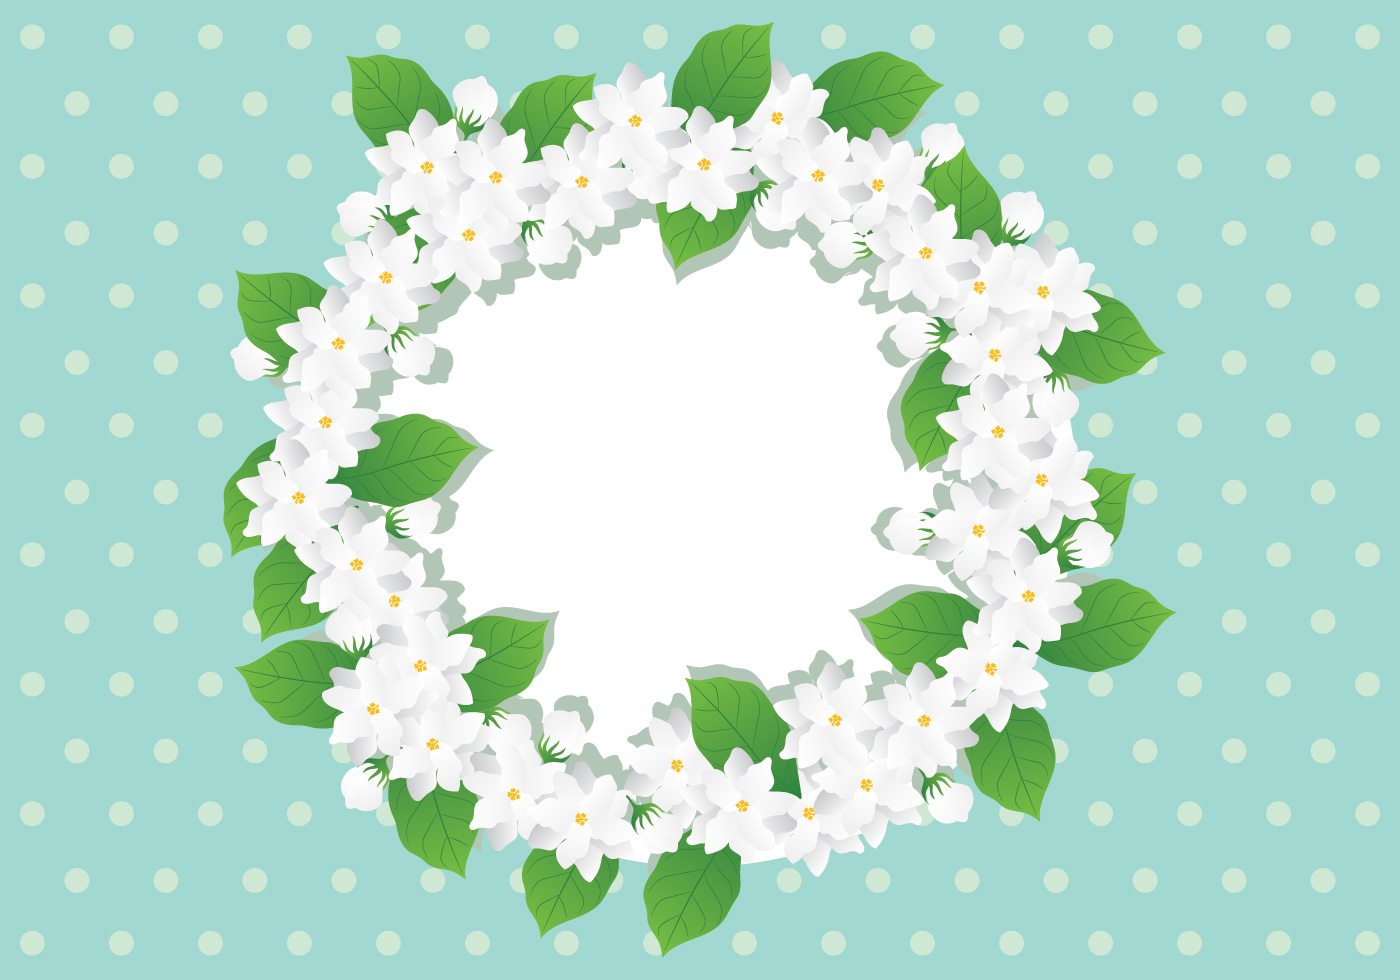 Jasmine Flower Wreath - Download Free Vectors, Clipart ...